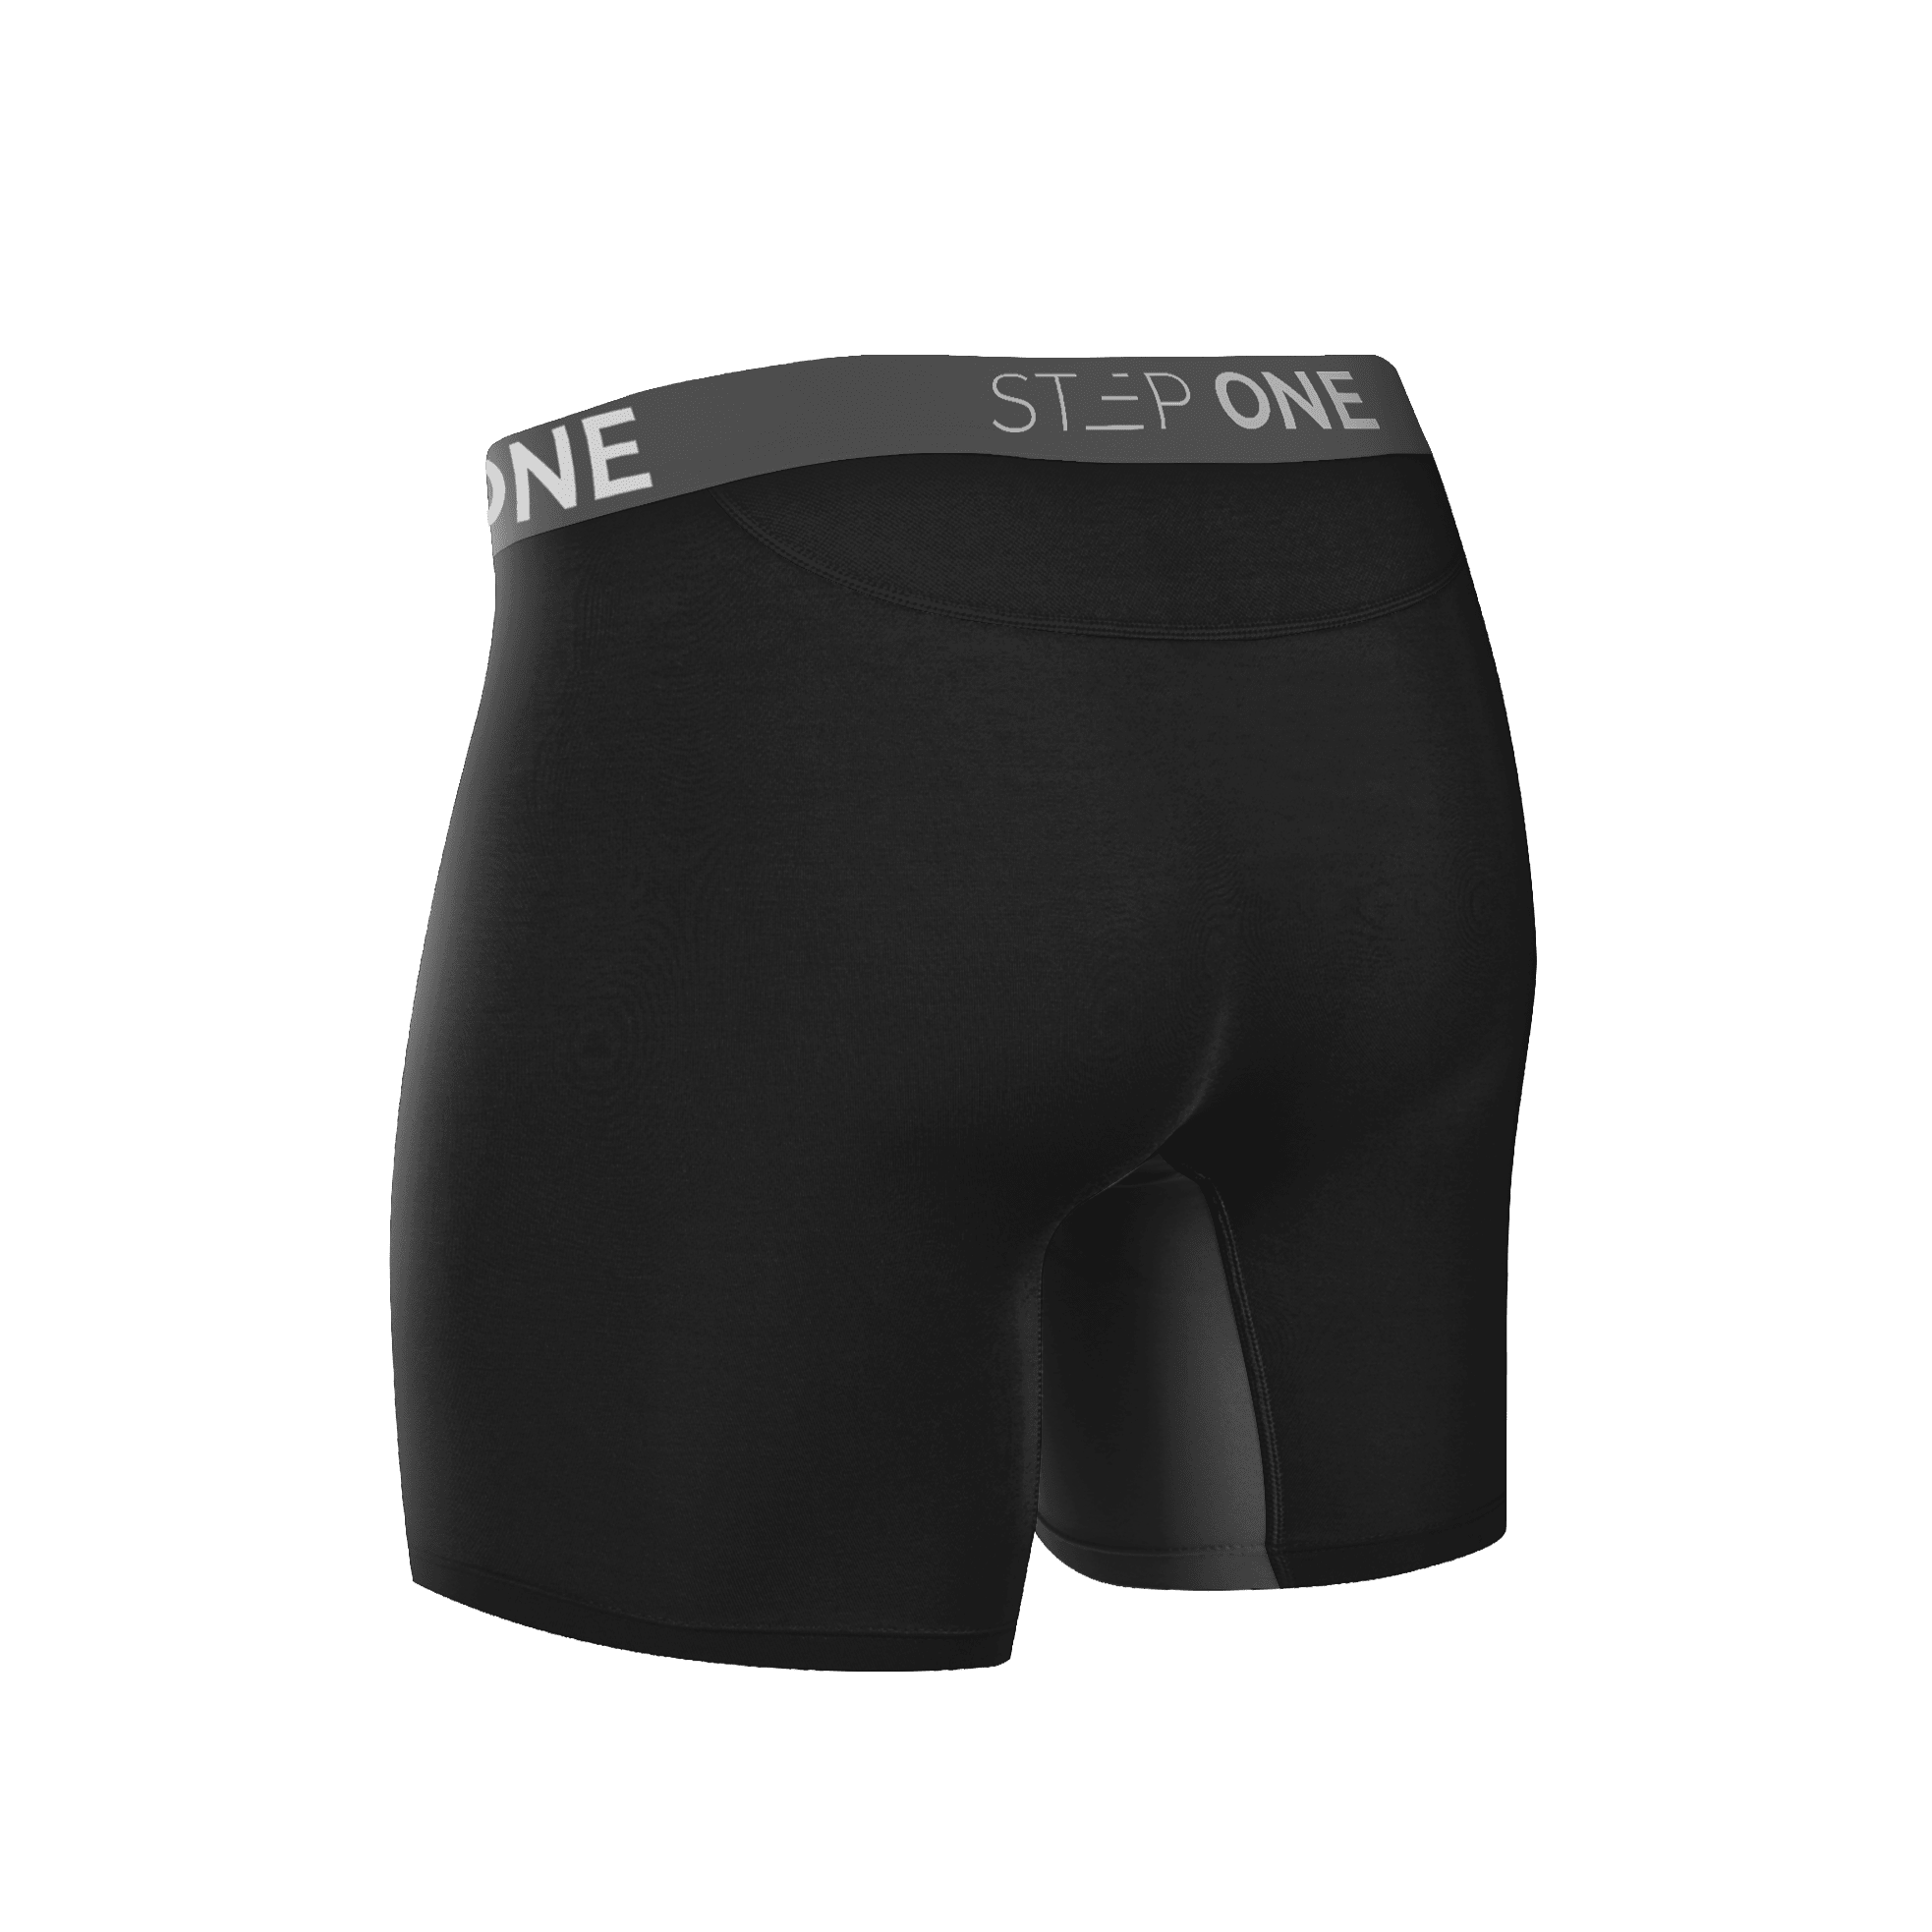 Boxer Brief Fly  Men's Underwear Step On